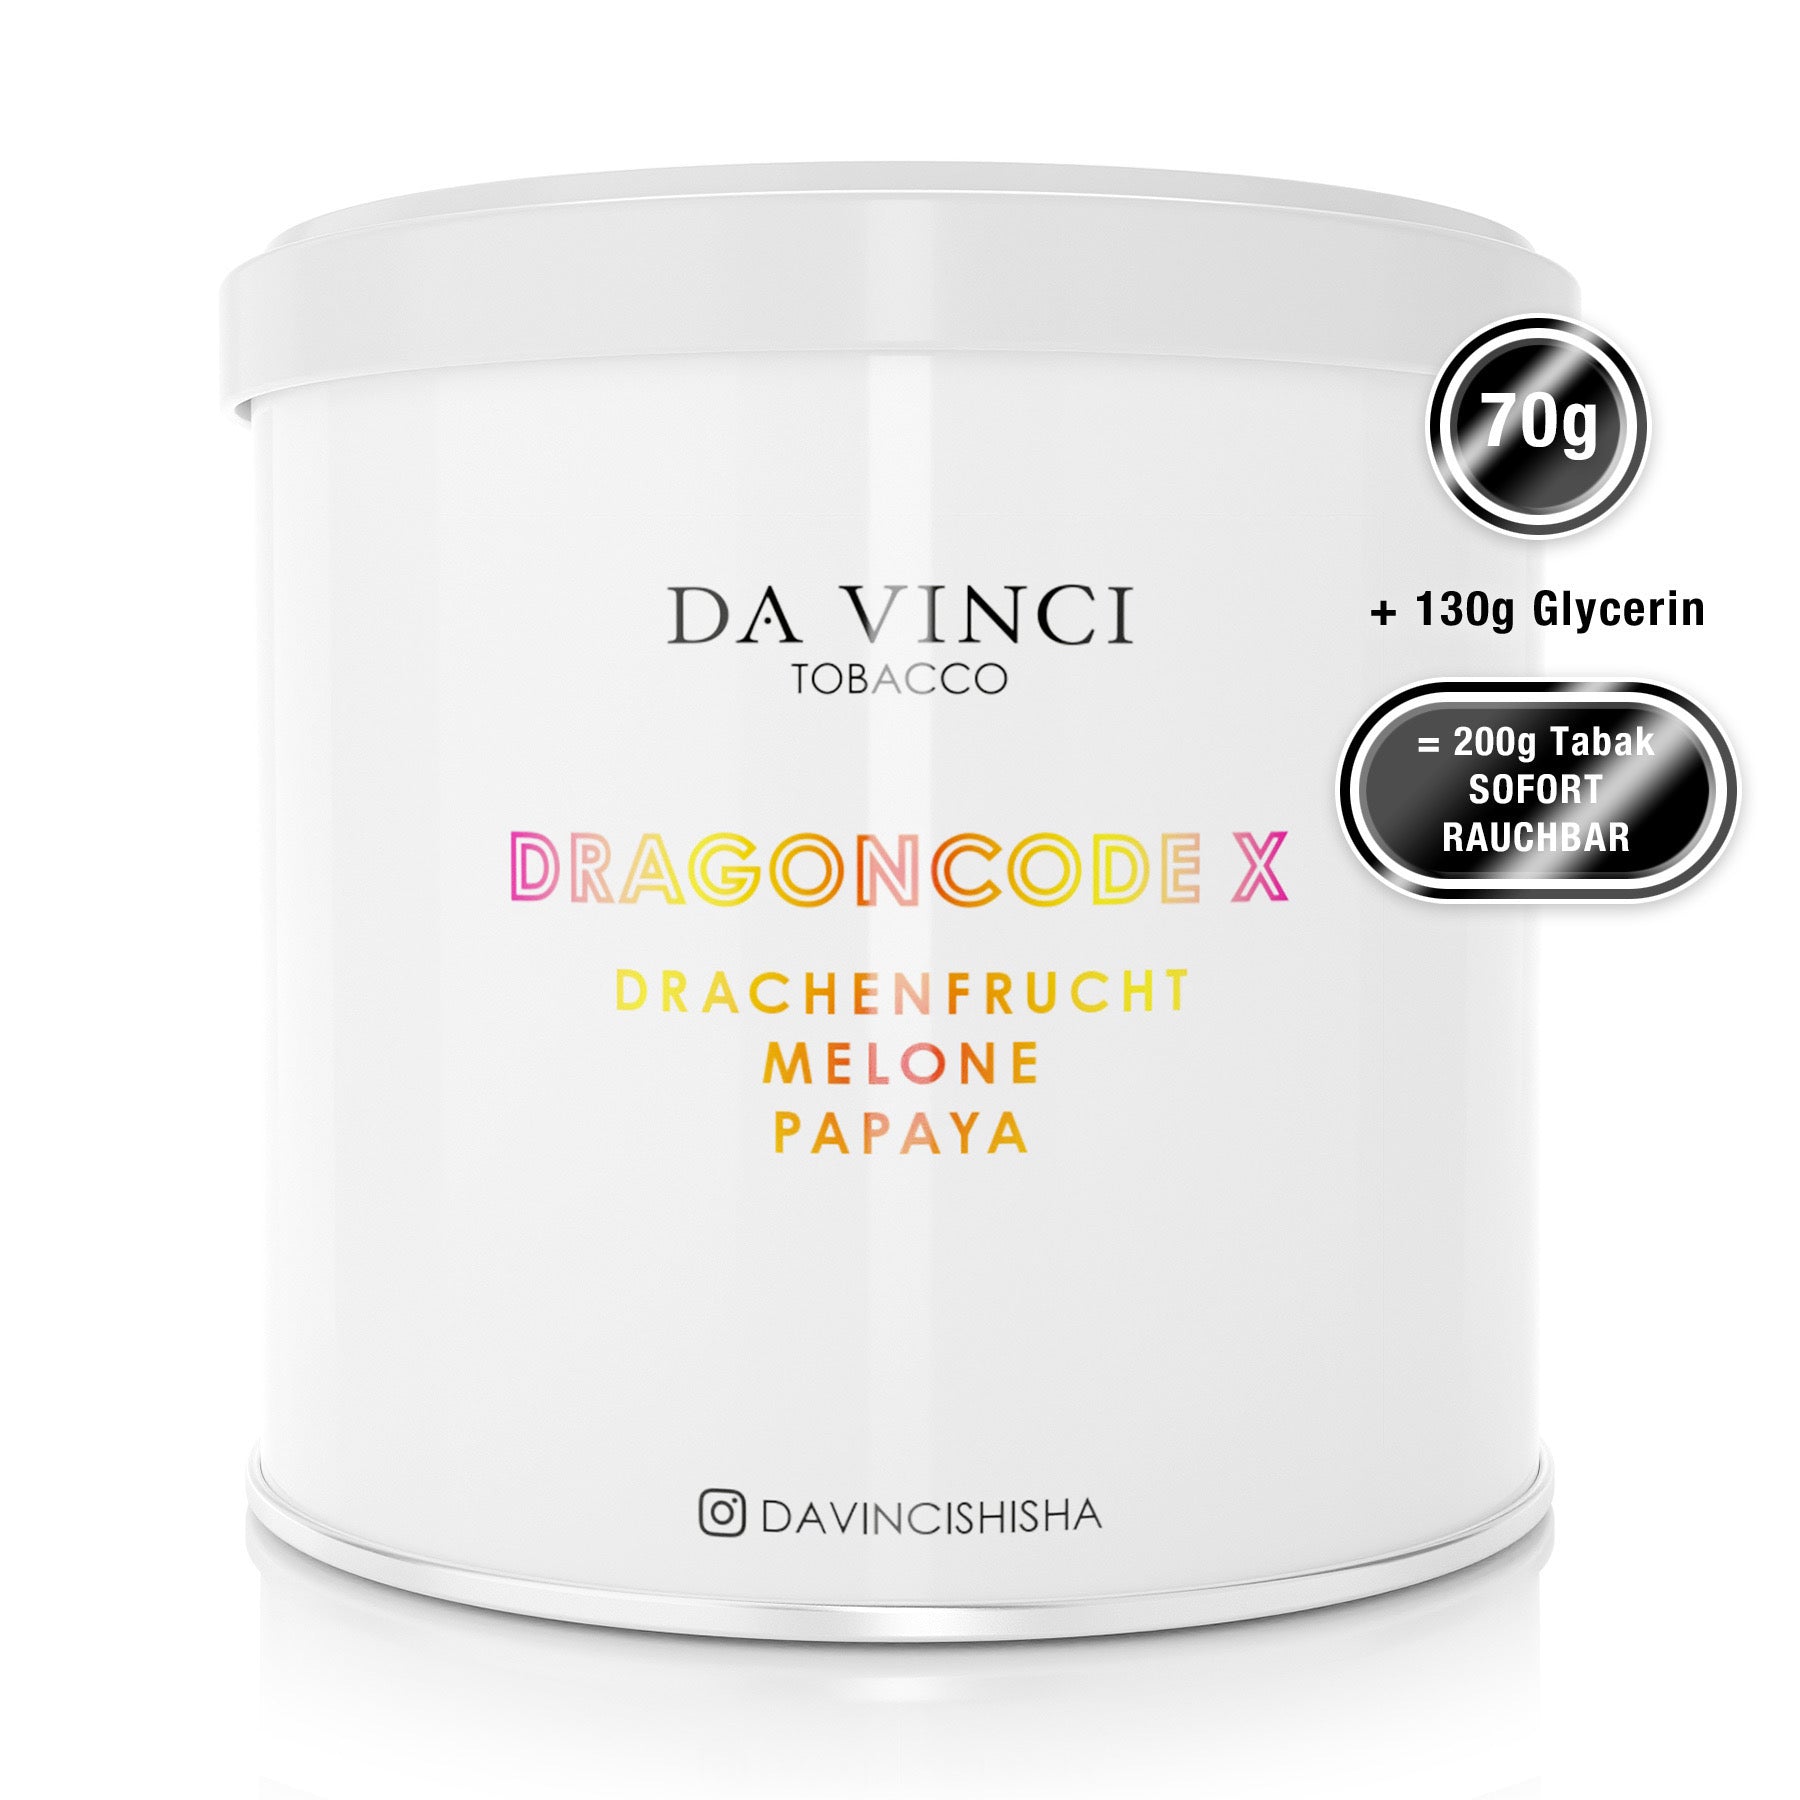 DA VINCI – DRAGON CODE X 70g Tabak (8692892401996)